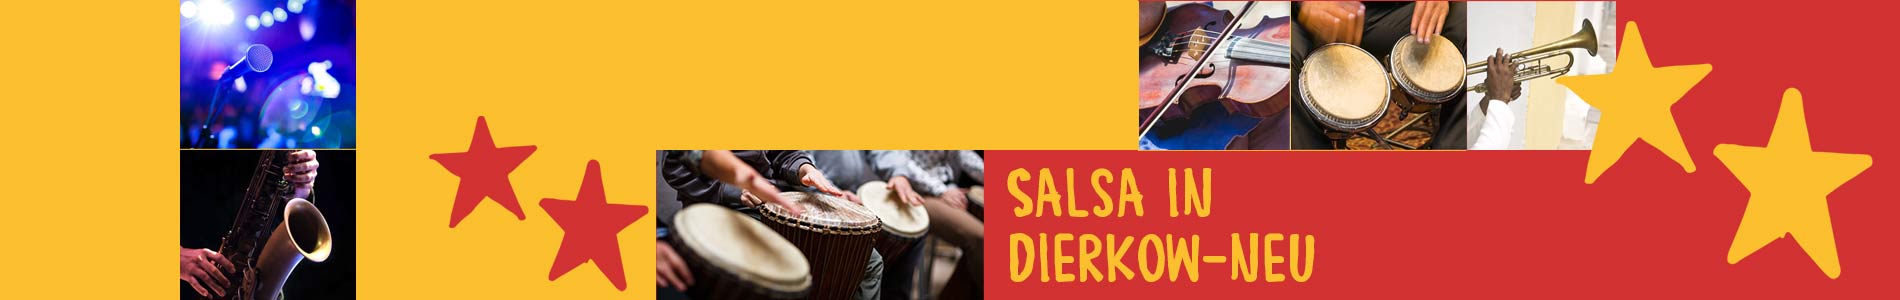 Salsa in Dierkow-Neu – Salsa lernen und tanzen, Tanzkurse, Partys, Veranstaltungen